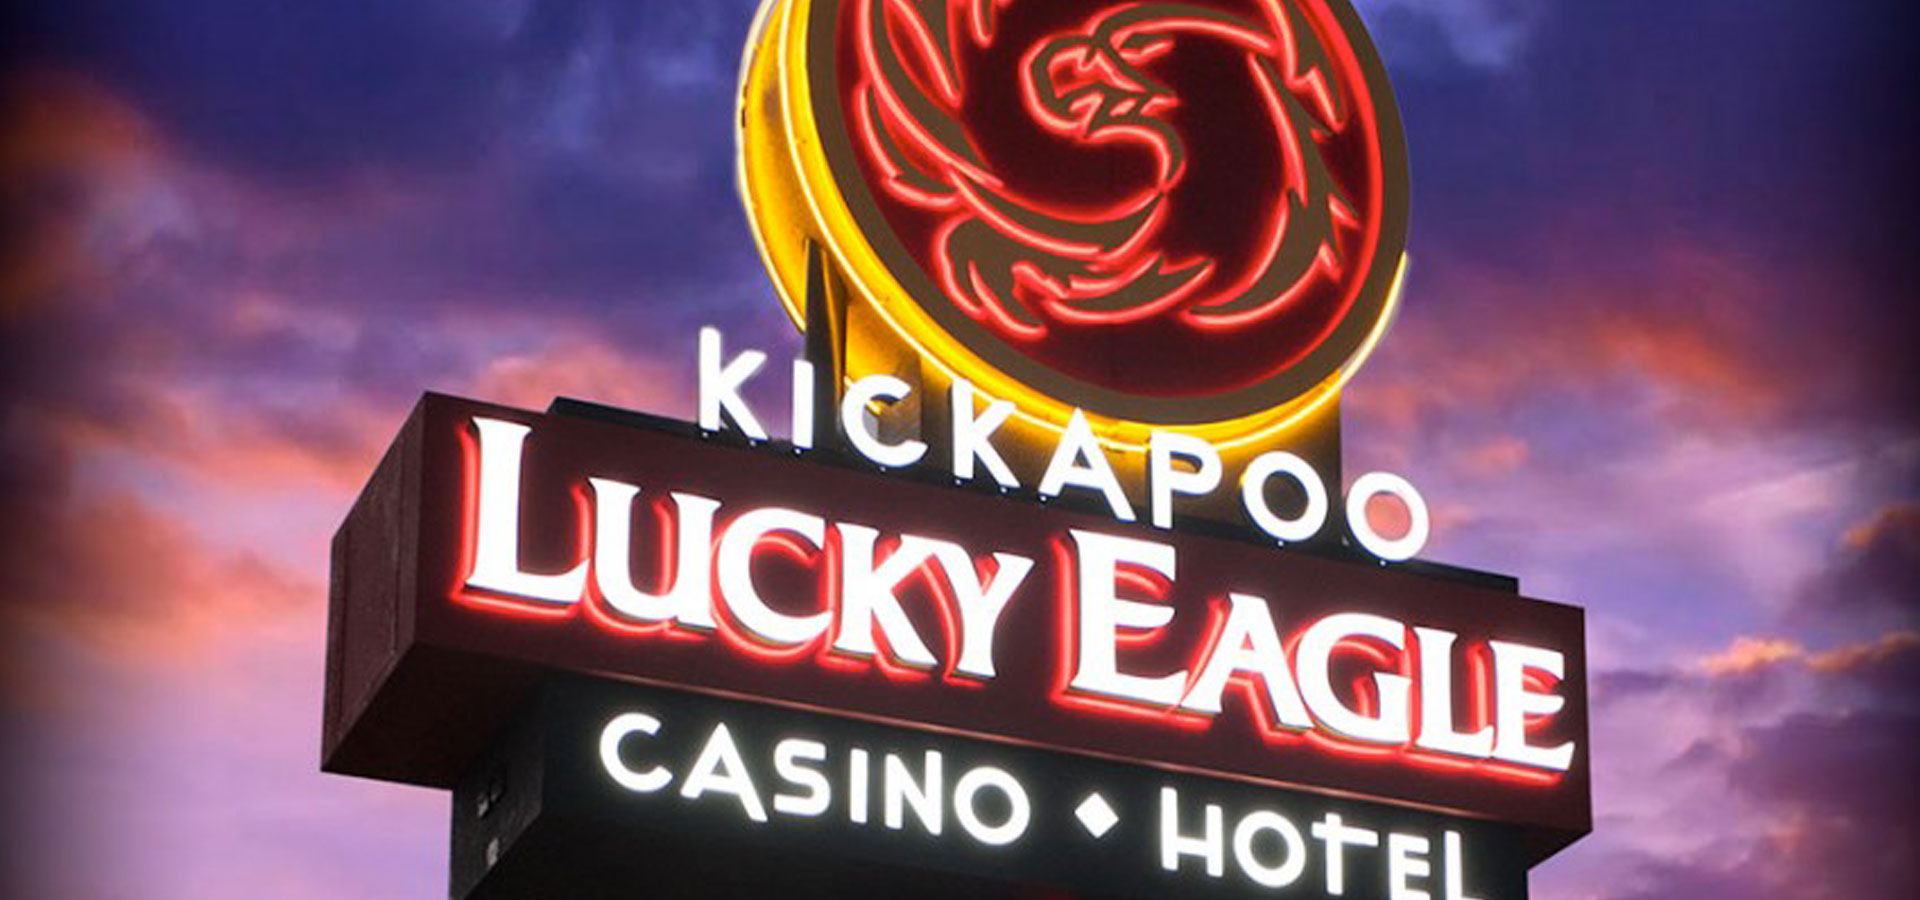 kickapoo lucky eagle casino slot winners